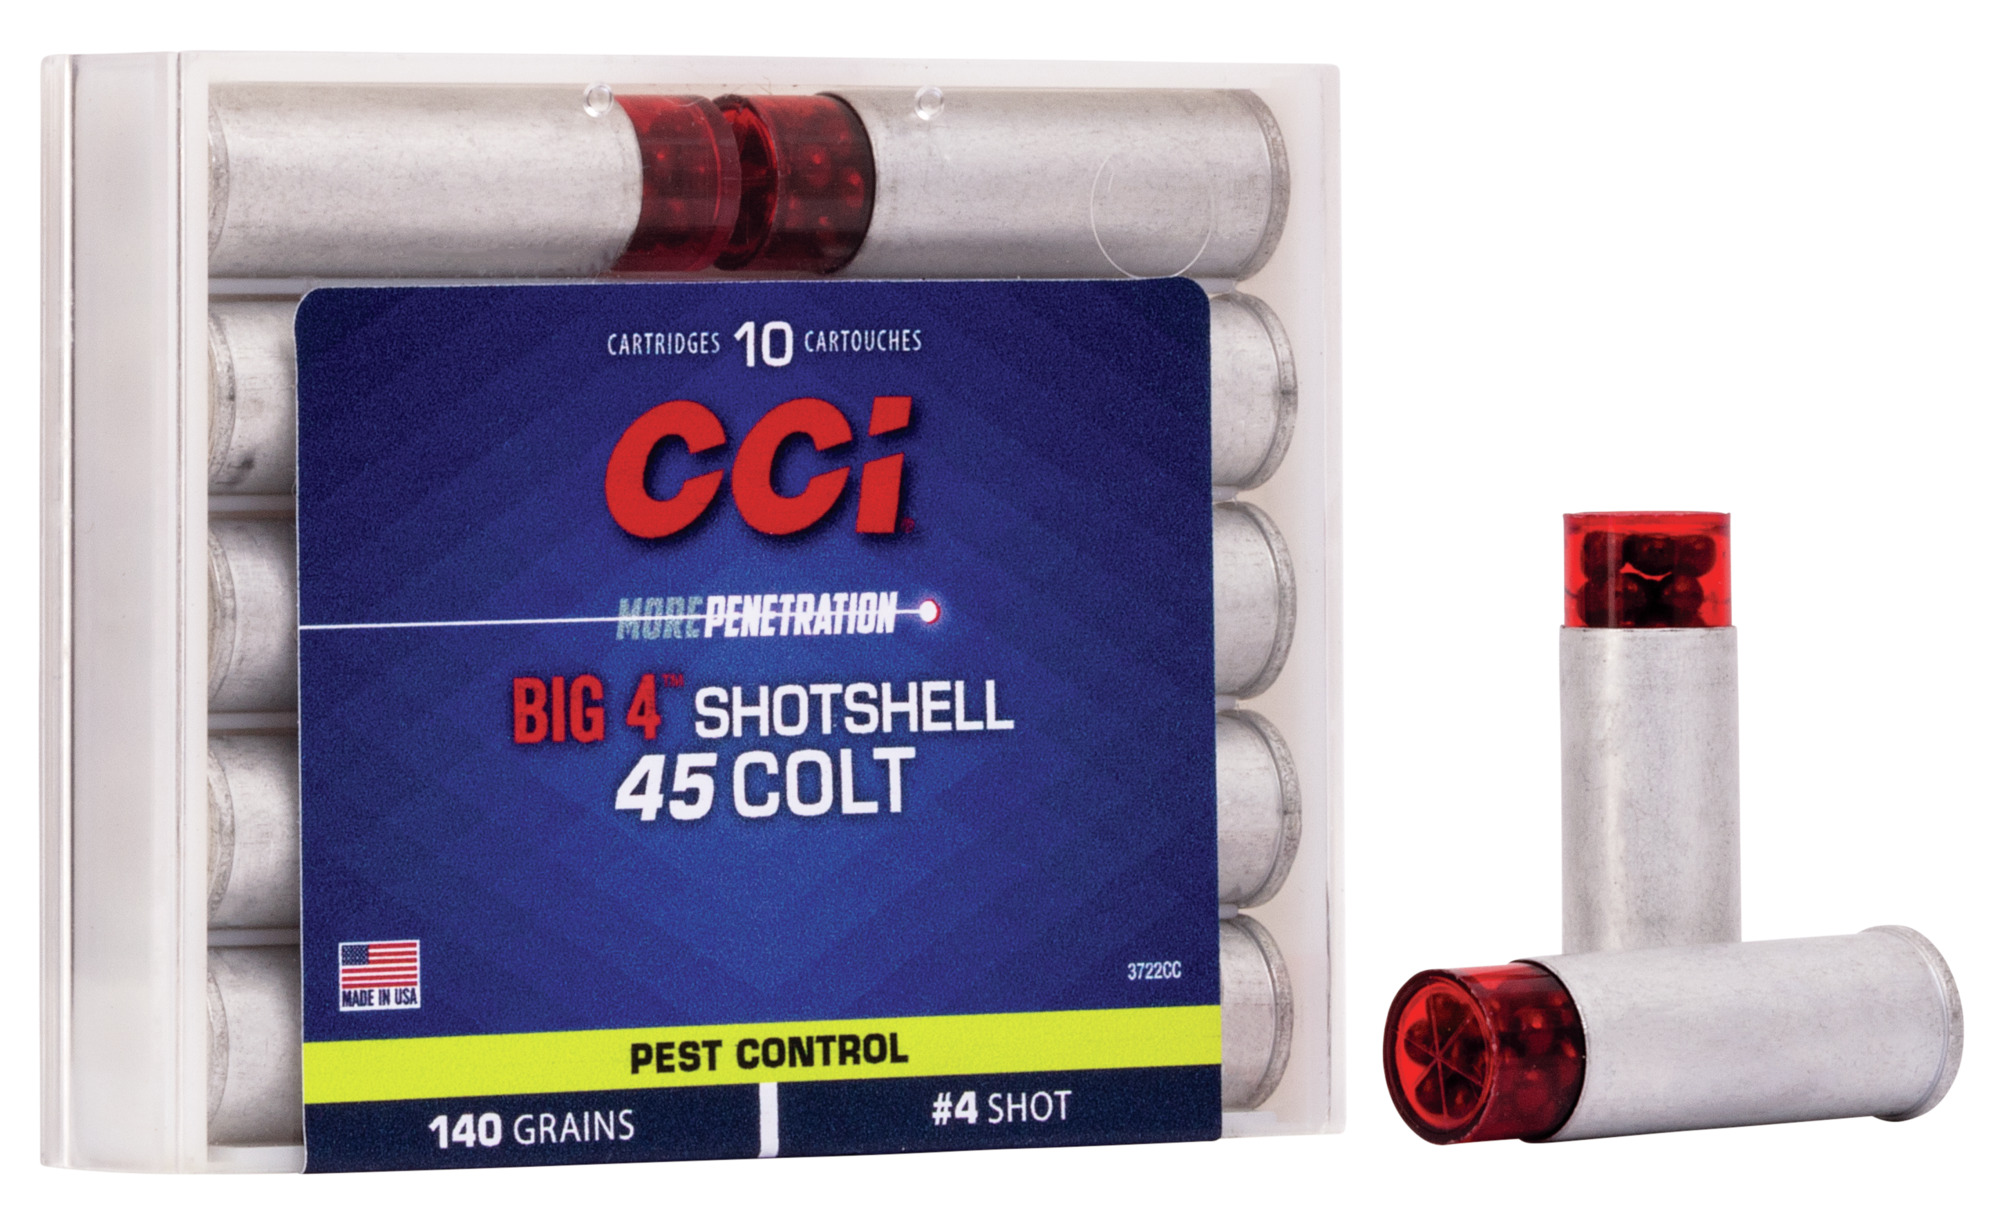 buy-pest-control-big-4-shotshell-for-usd-26-99-cci